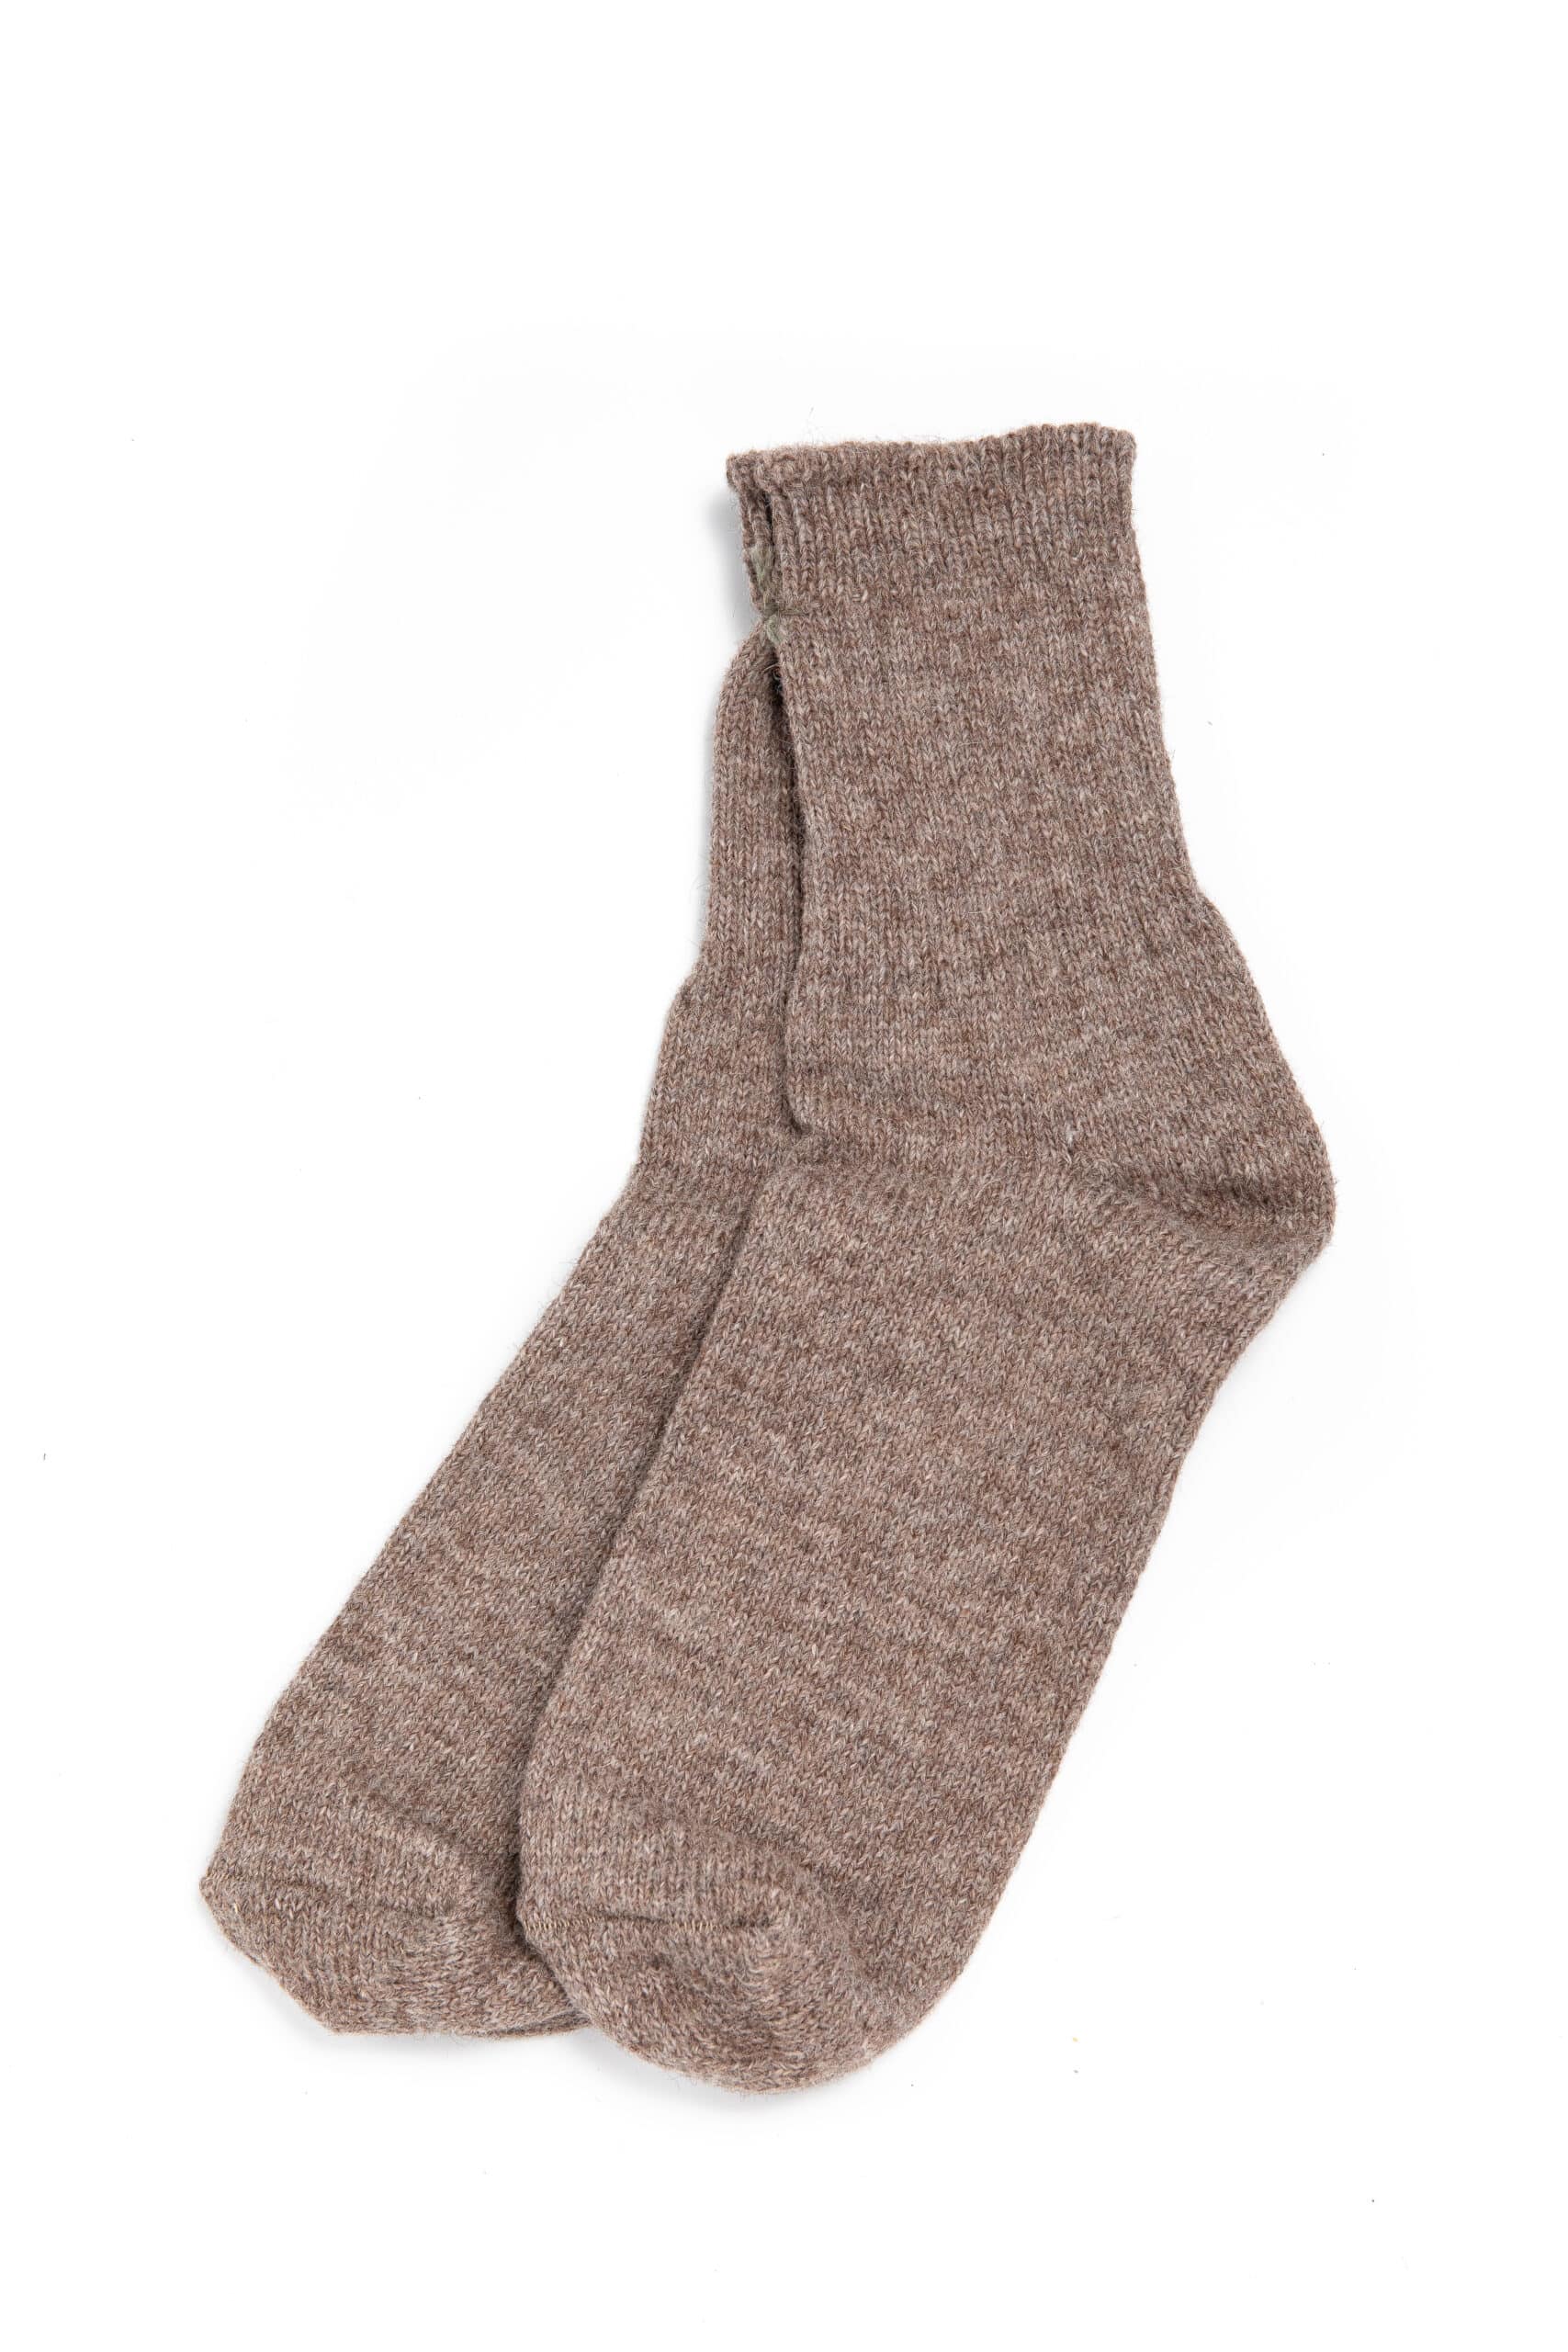 McGregor 'Feel Good' Wool Non-Elastic Socks - 1503 - Navy 003